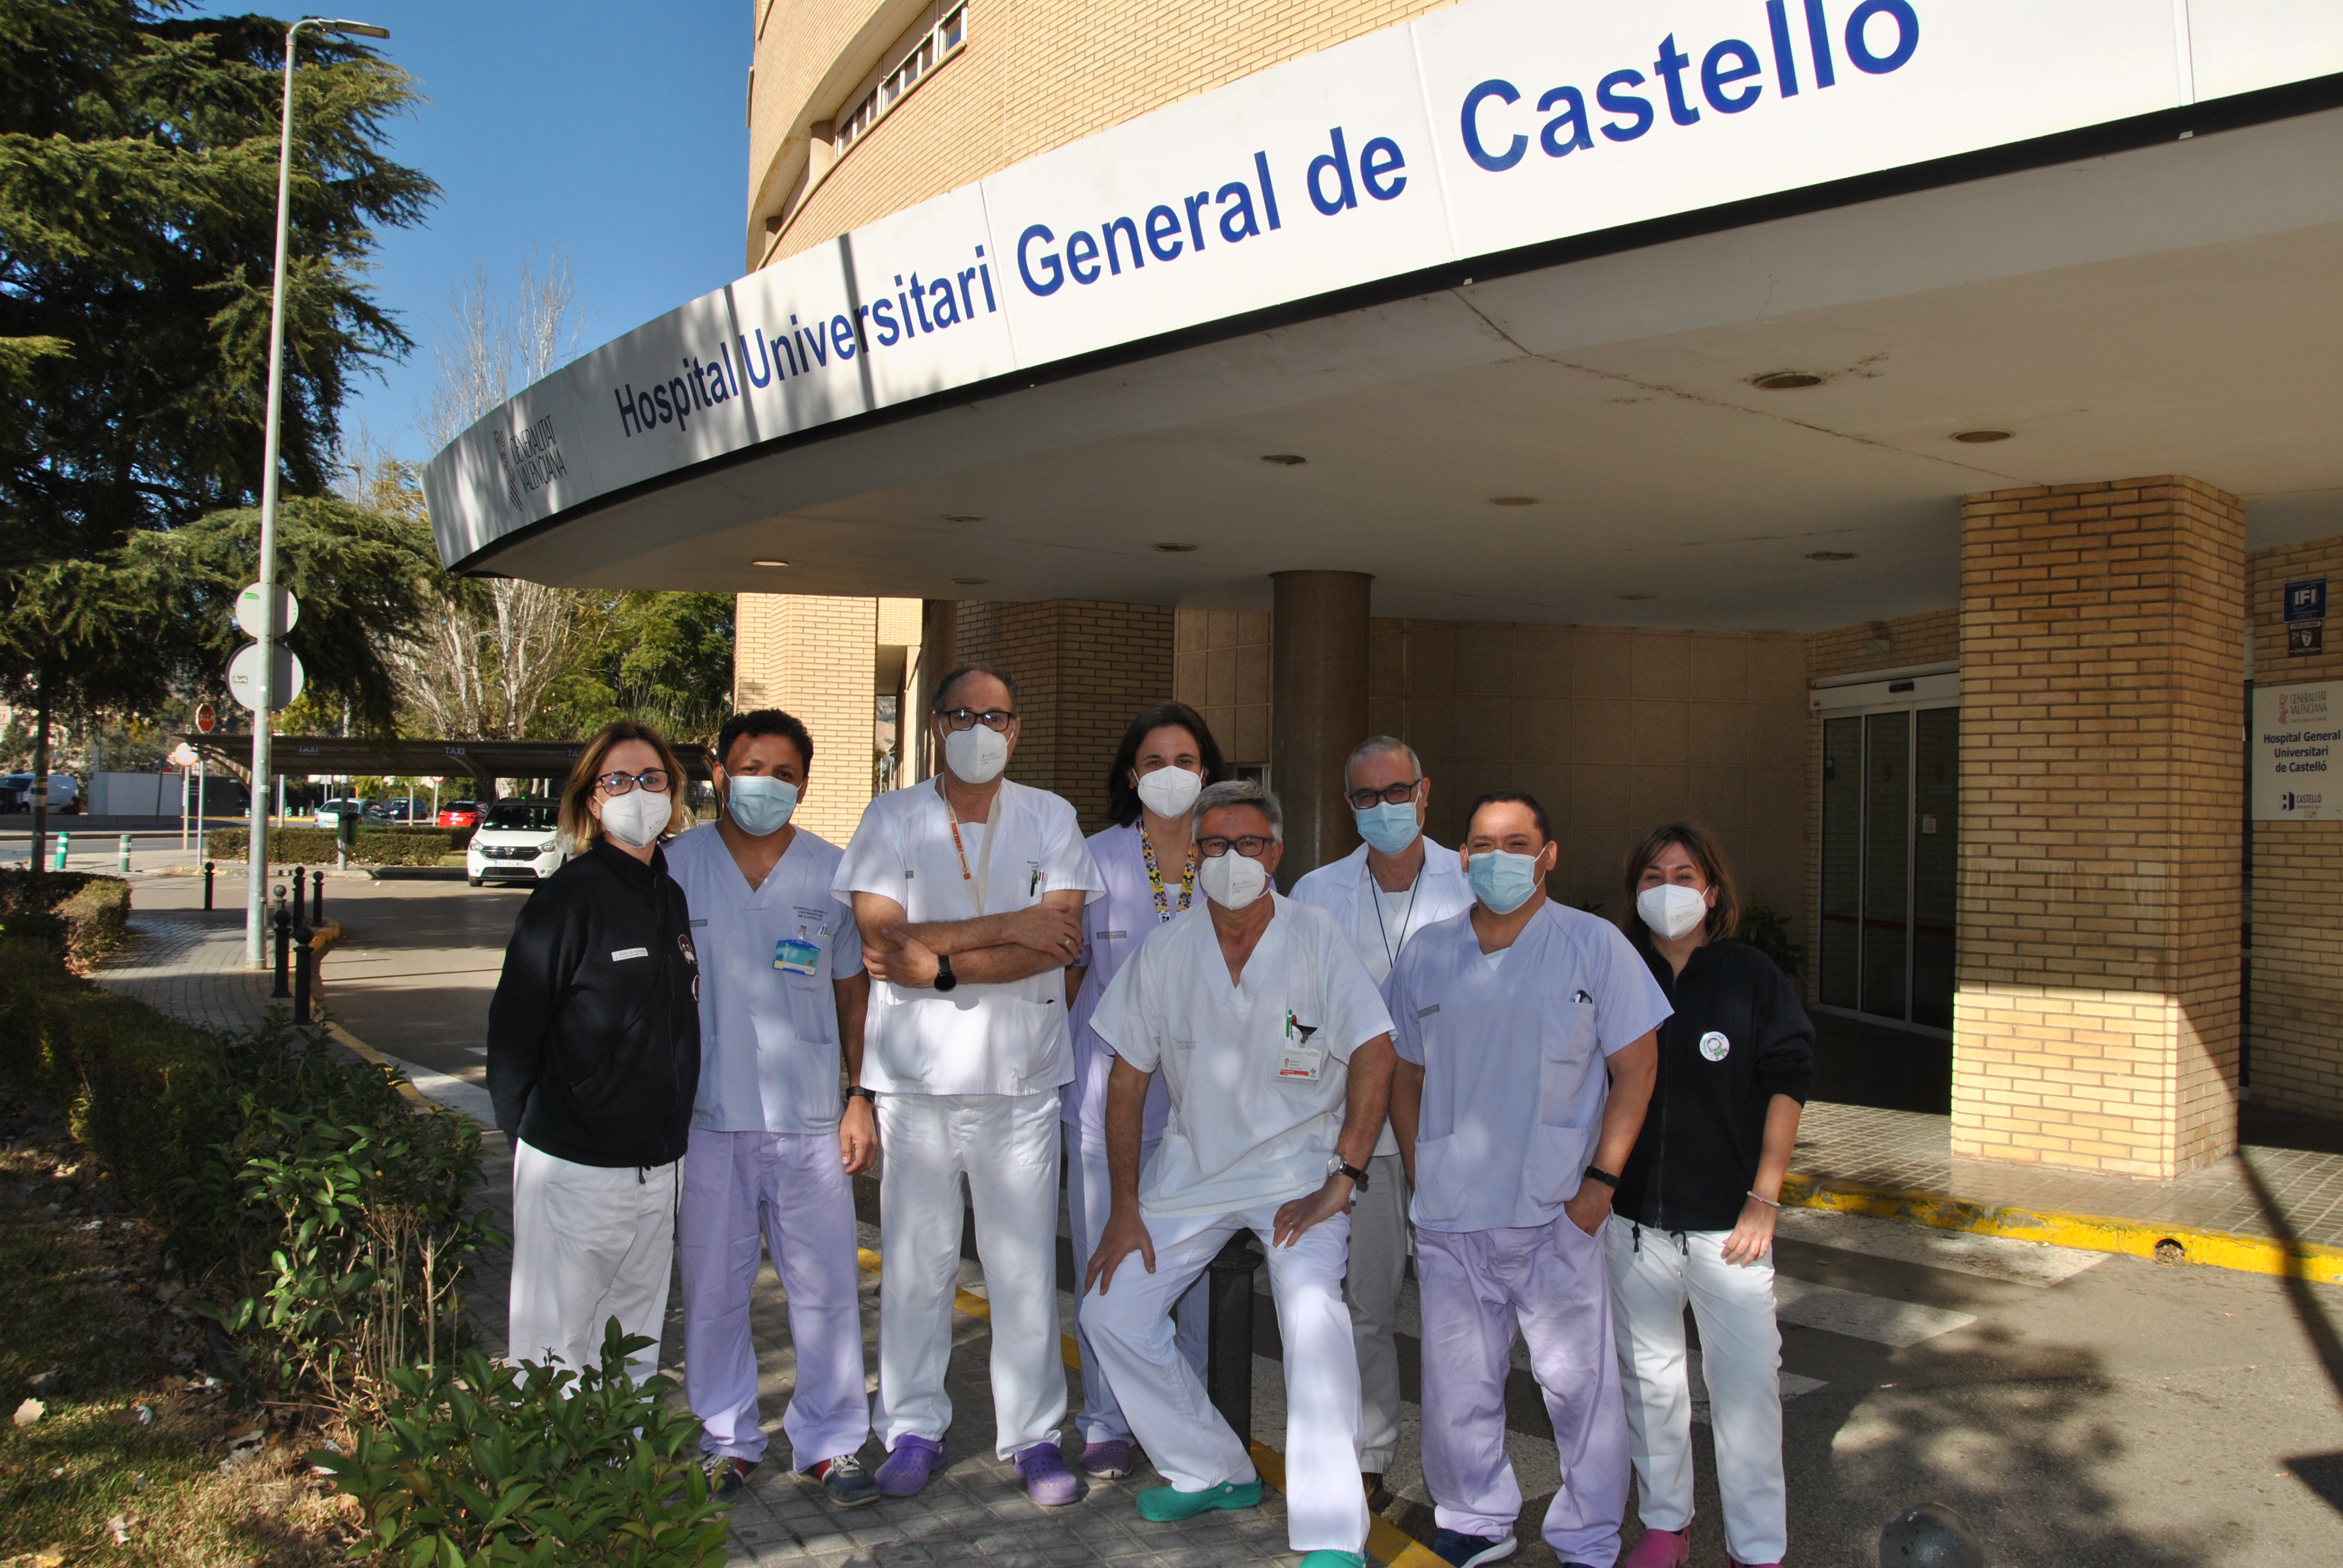 grupo de sanitarios hombres y mujeres posan frente a la puerta principal del hospital general universitario de castellón